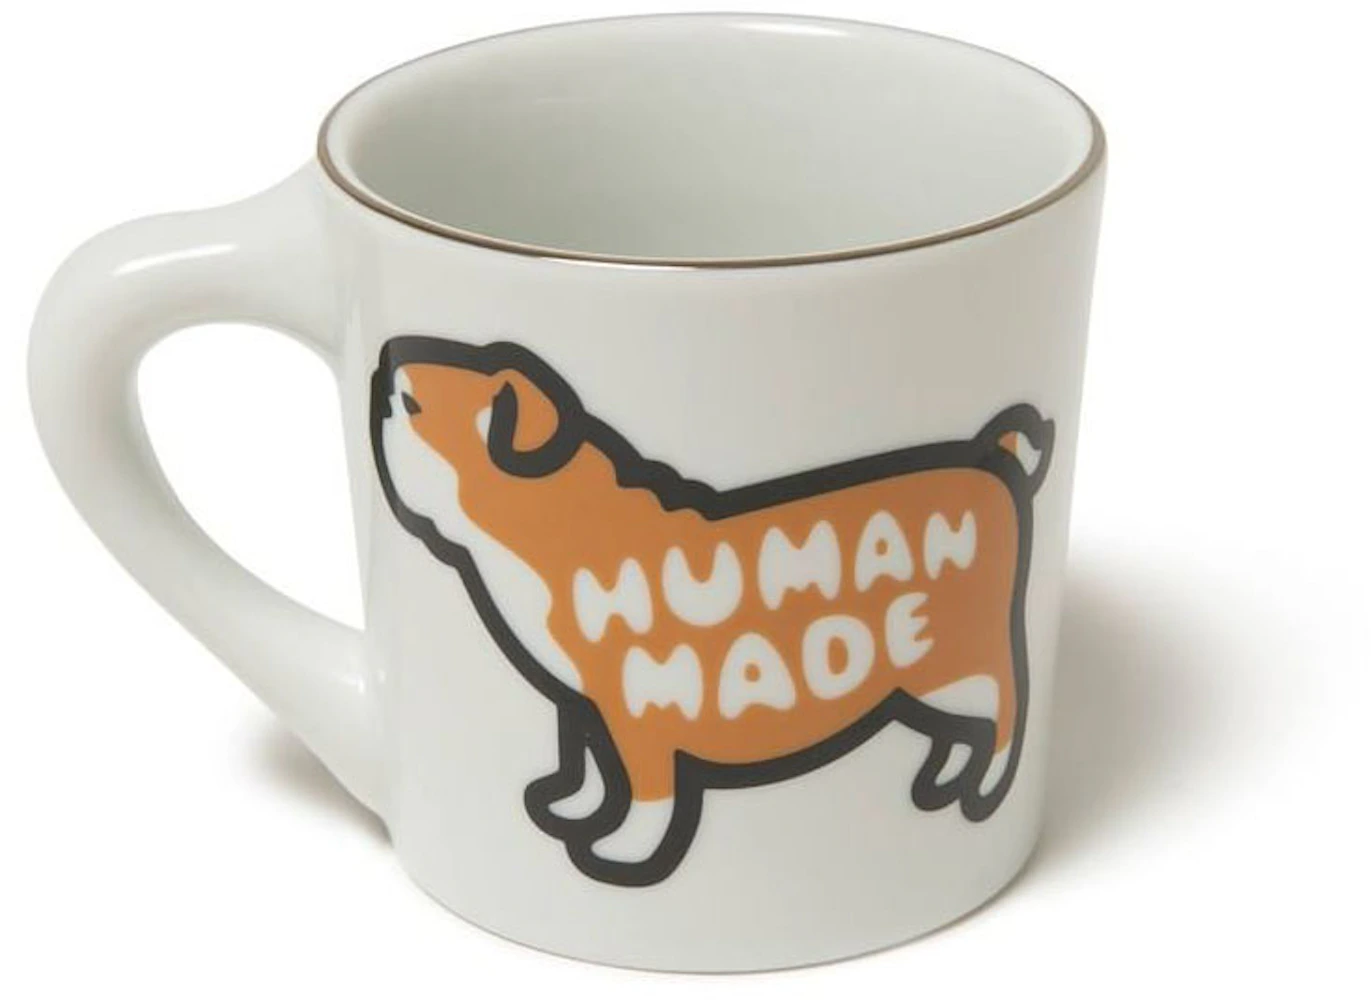 humanmade sake / coffee cup. 🍶☕️ [via @huan_lin_] #HumanMade #HumanMade®︎ # NIGO #NIGO® #Sake #Coffee…